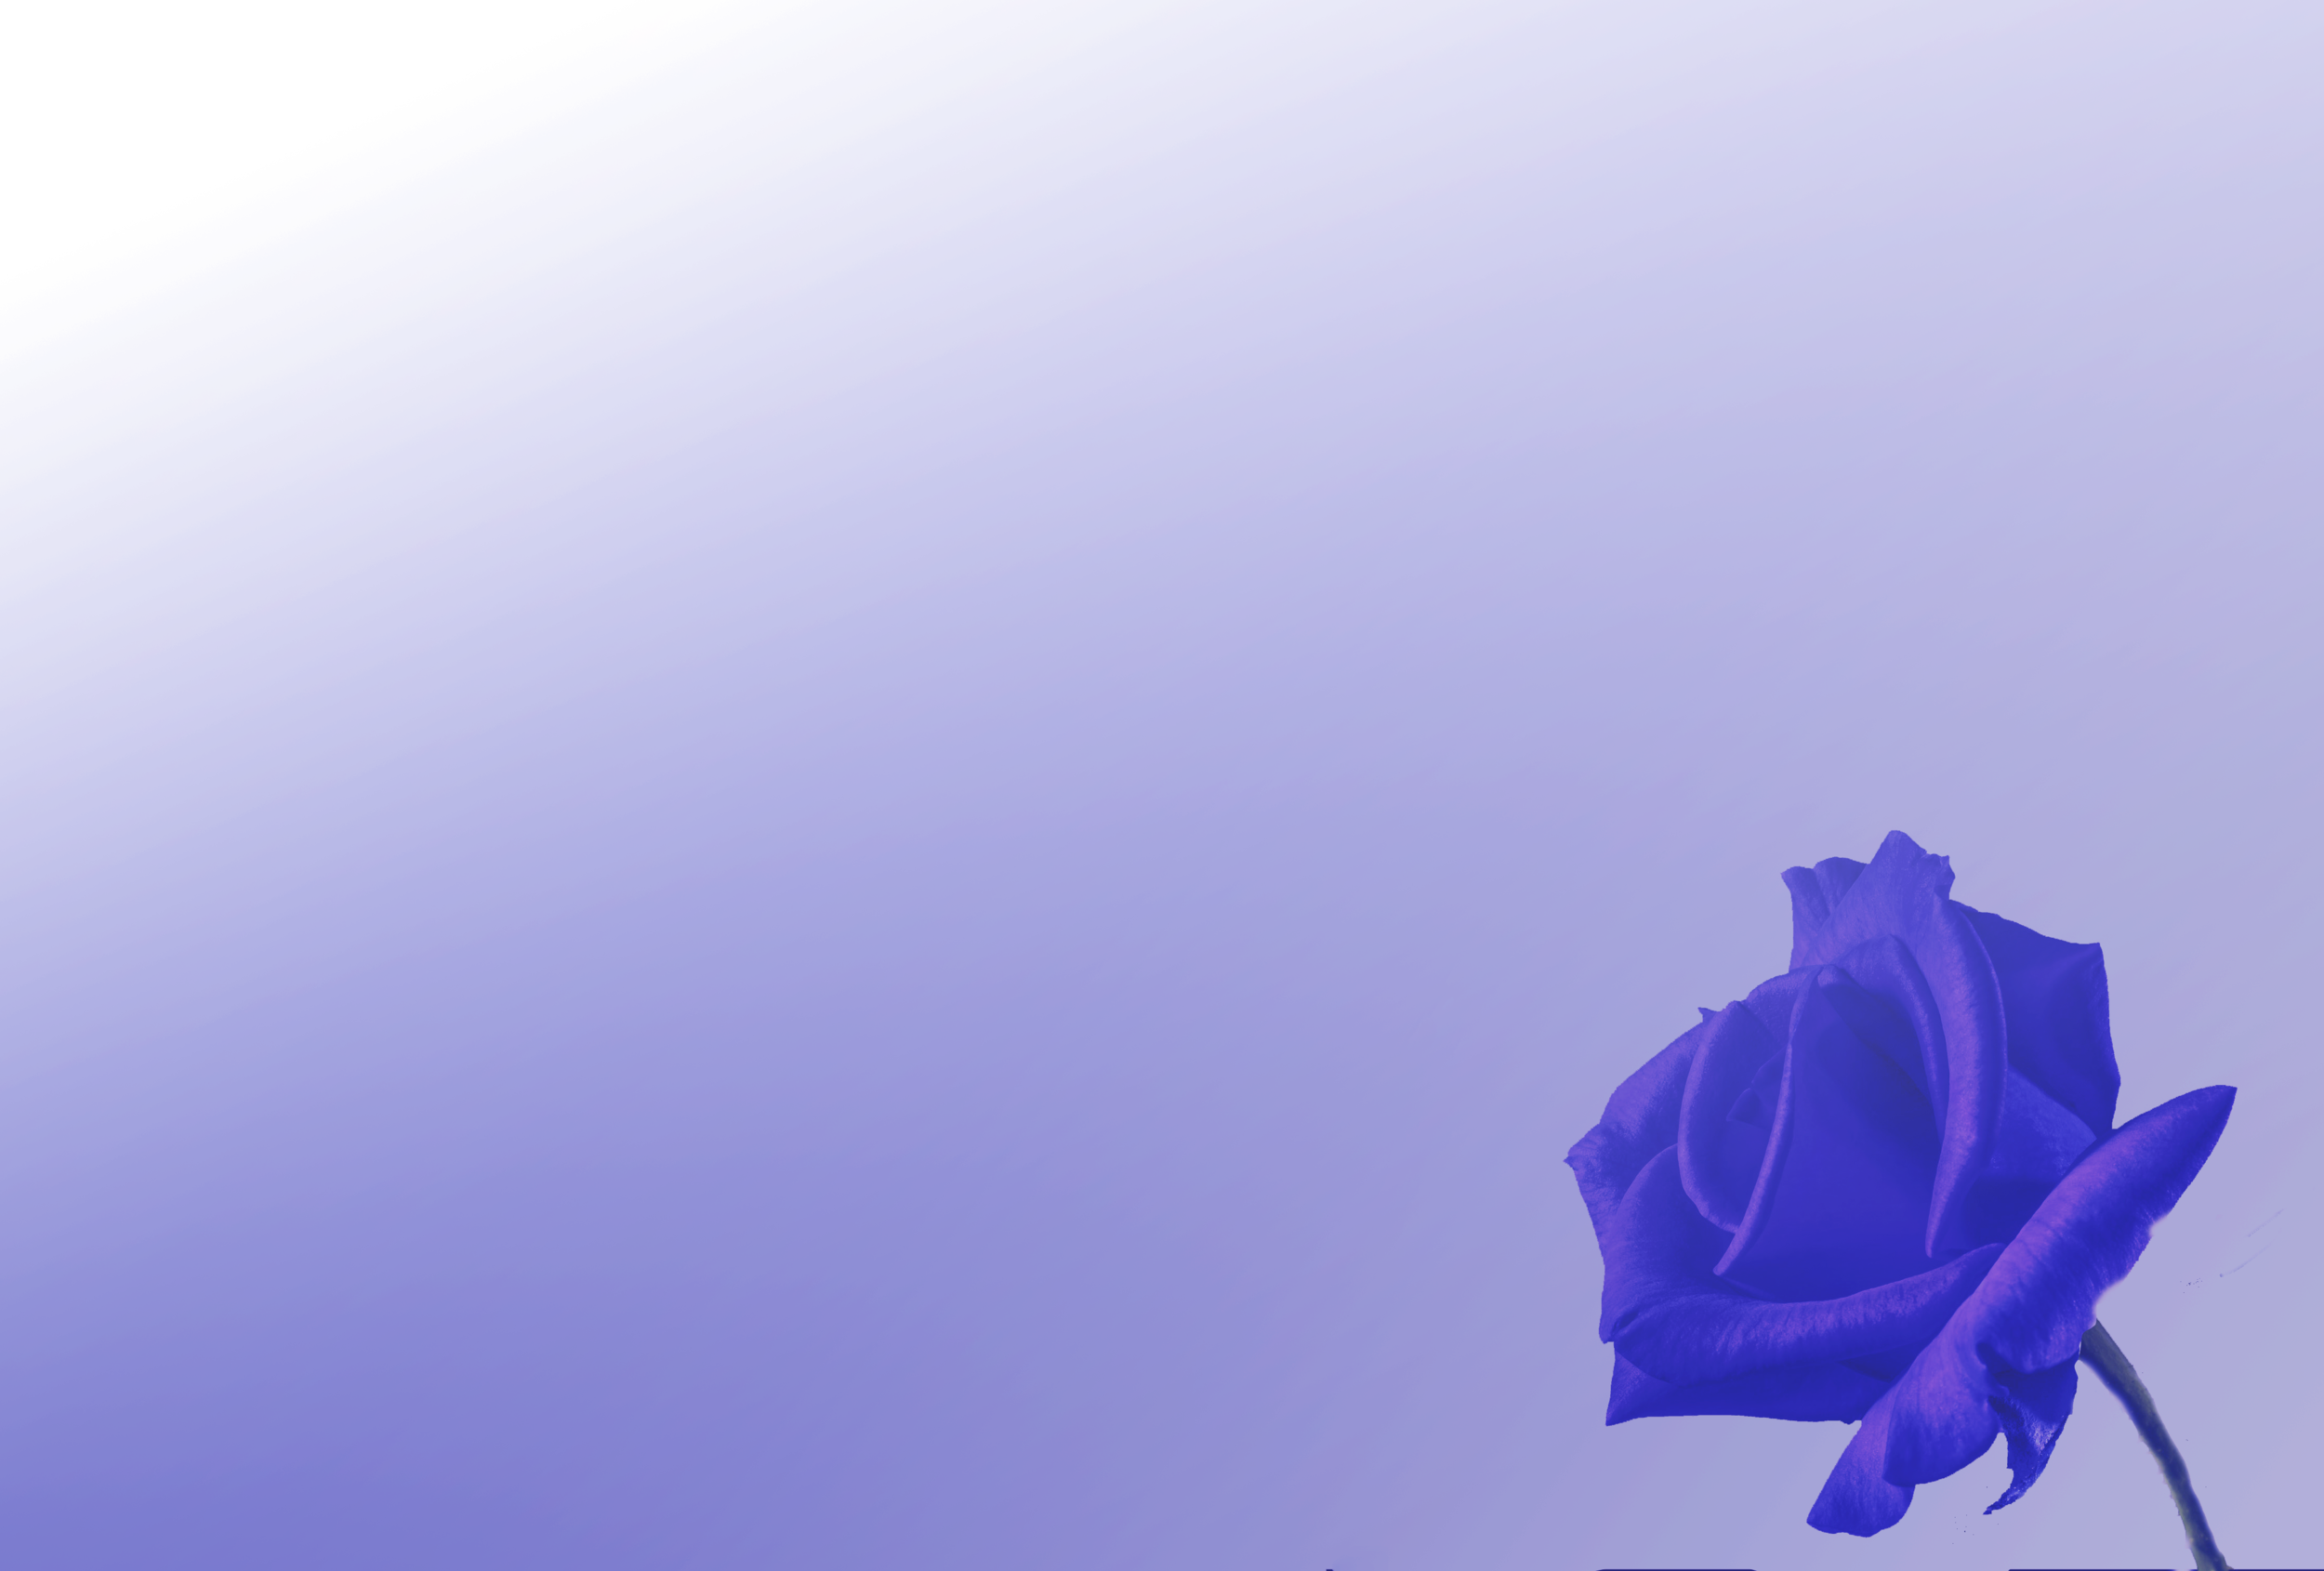 Hoa hồng xanh chữa lành (Blue Rose Healing): Hãy cùng nhìn vào hình ảnh của hoa hồng xanh chữa lành và cảm nhận nét độc đáo và mềm mại của chúng. Hình ảnh sẽ giúp bạn thấy được một phần tình yêu và sự thủy chung của những người gửi gắm chúng vào bó hoa. Quả thật, đây là một trải nghiệm tuyệt vời đang chờ đón bạn.